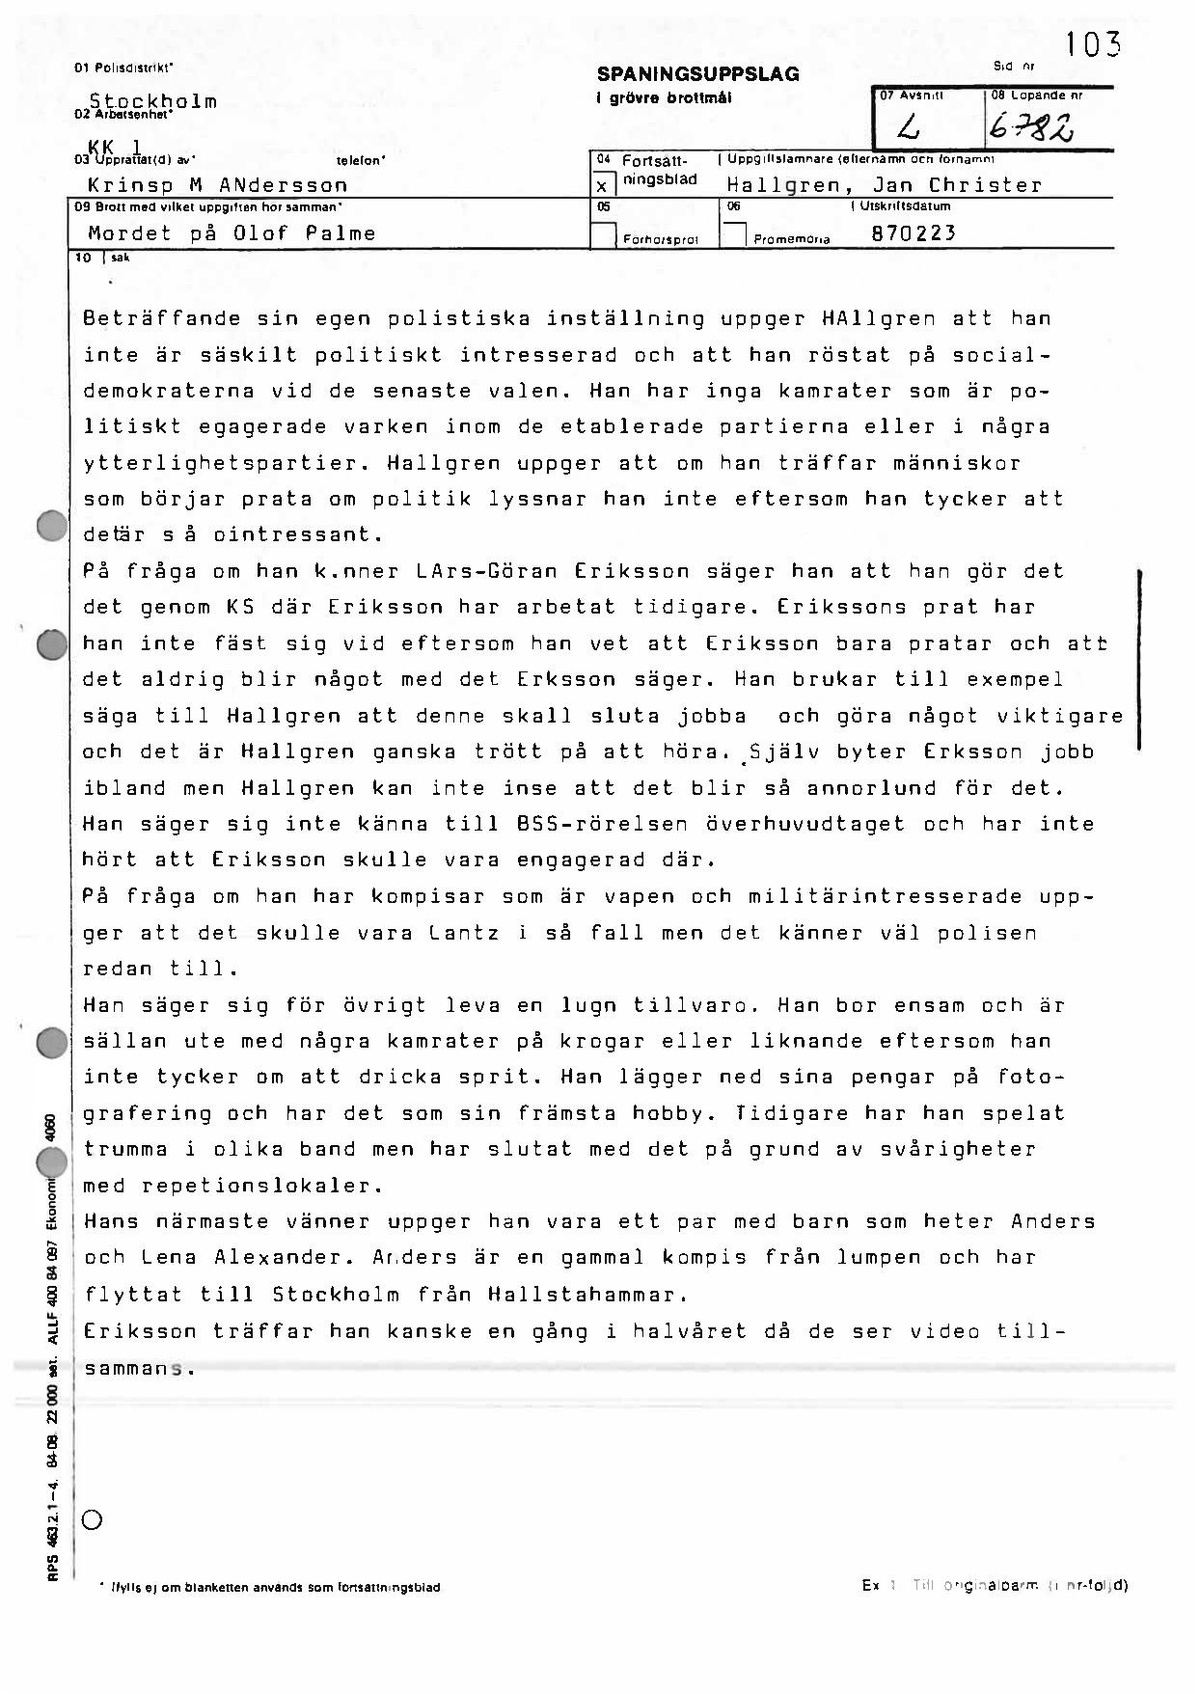 Pol-1987-02-23 1250 L6782-00 Förhör med Jan Hallgren på Grand.pdf